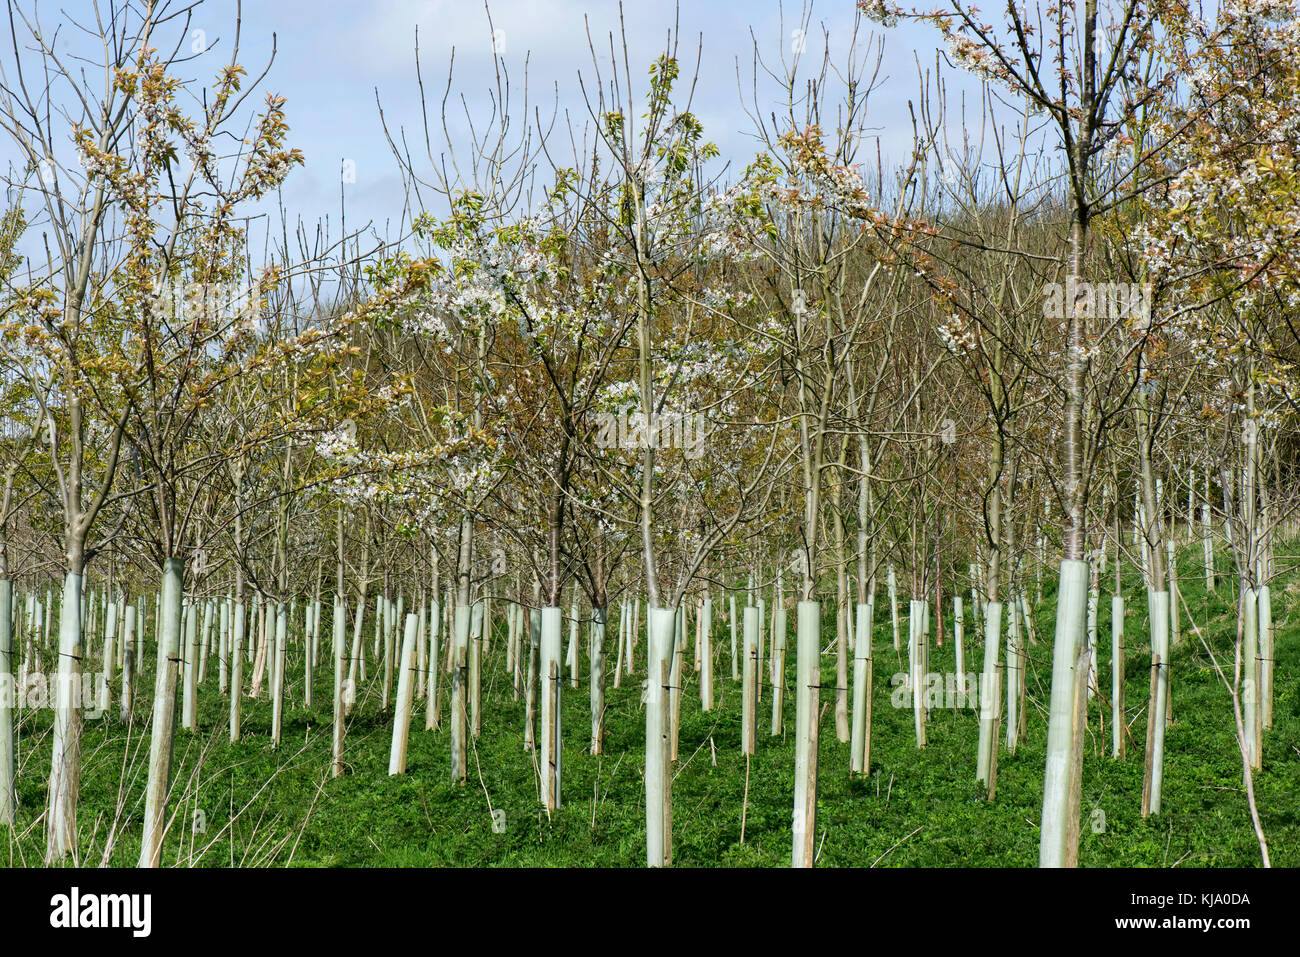 Une plantation de jeunes arbres forestiers pour la floraison, les cerises sauvages et d'autres, dans des tubes de protection en plastique au printemps, Berkshire, avril Banque D'Images